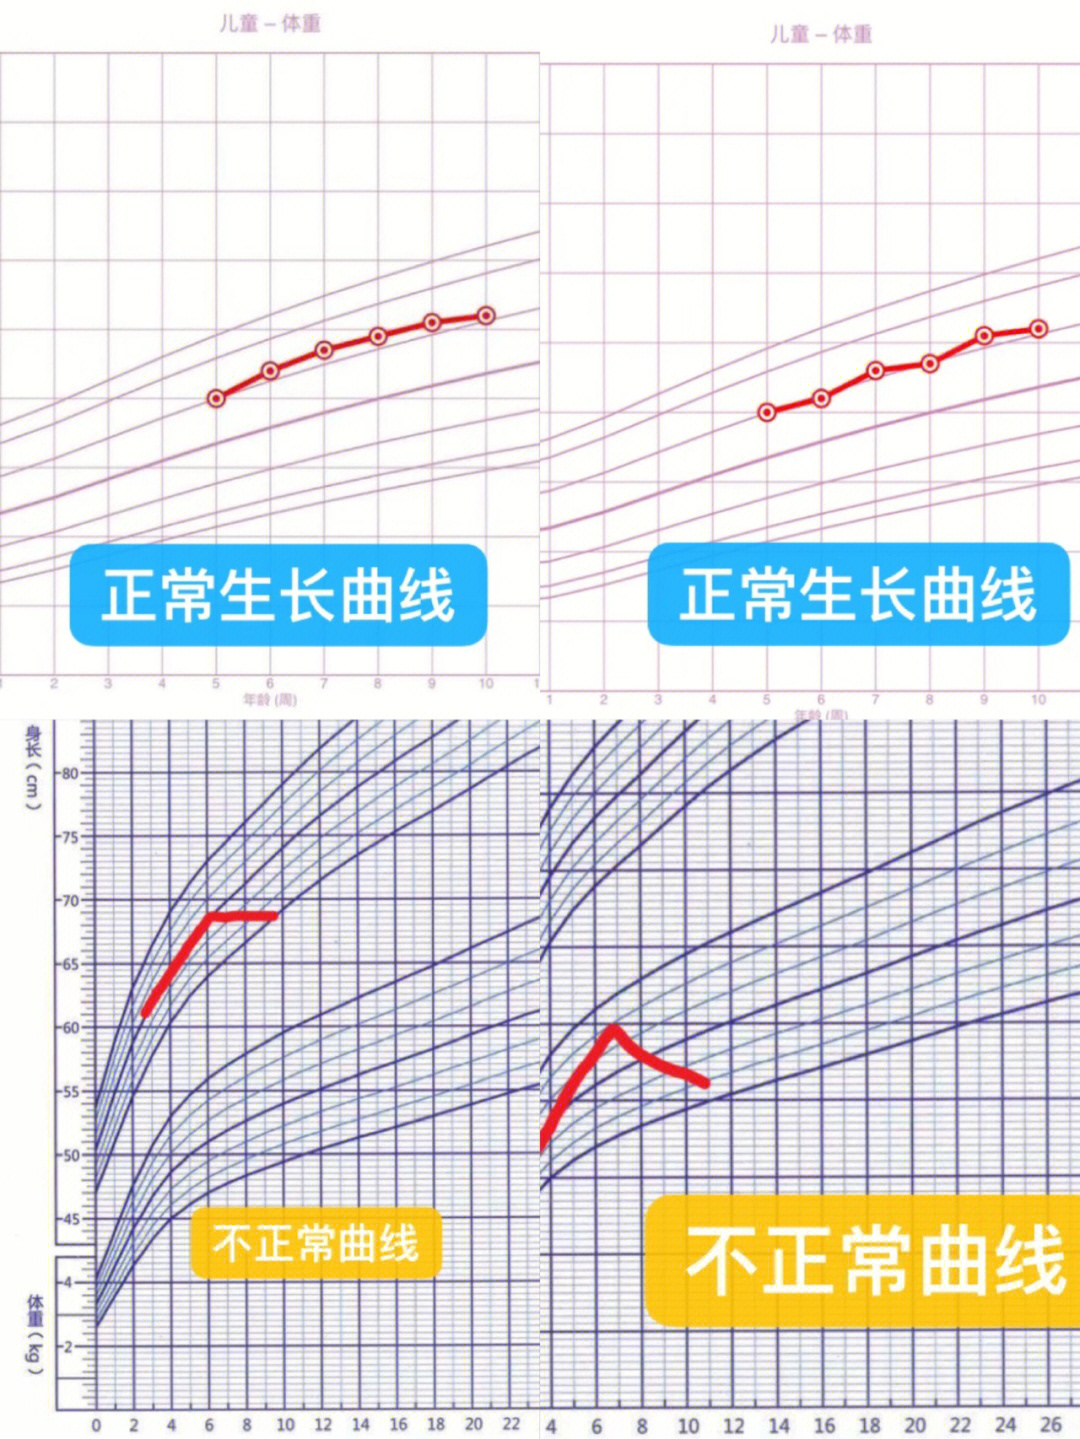 手绘生长曲线太麻烦了,直接用生长曲线app01靠谱推荐:育学园,丁香